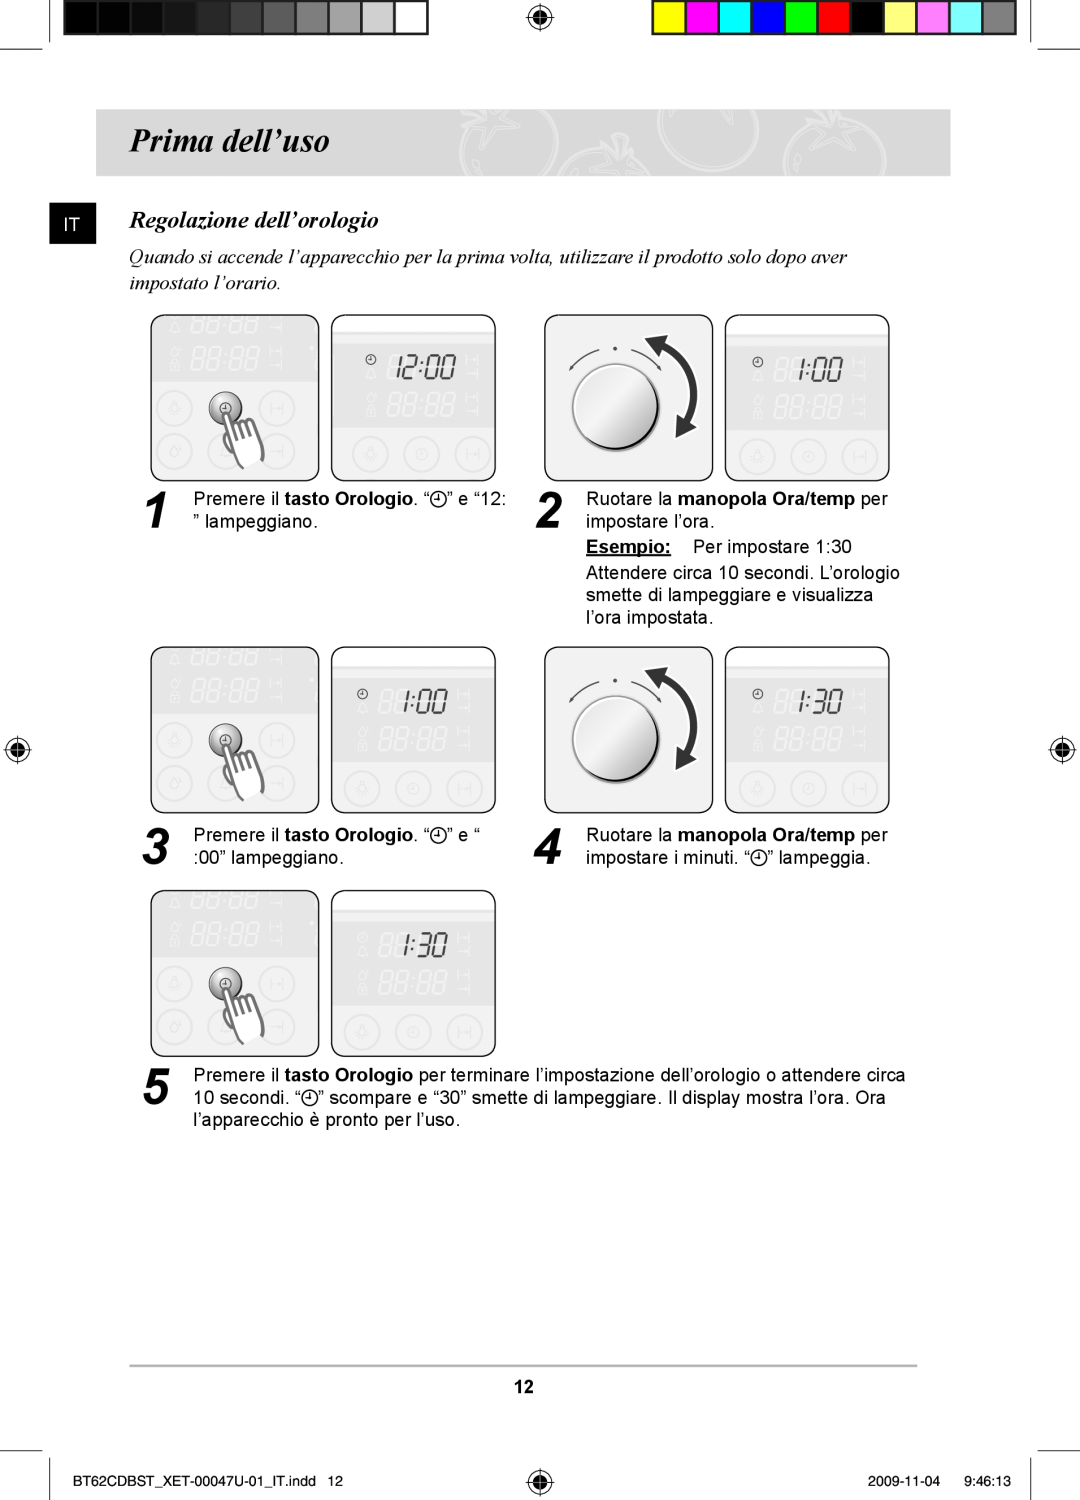 Samsung BT62CDBST/XET manual Prima dell’uso, Regolazione dell’orologio, impostato l’orario 